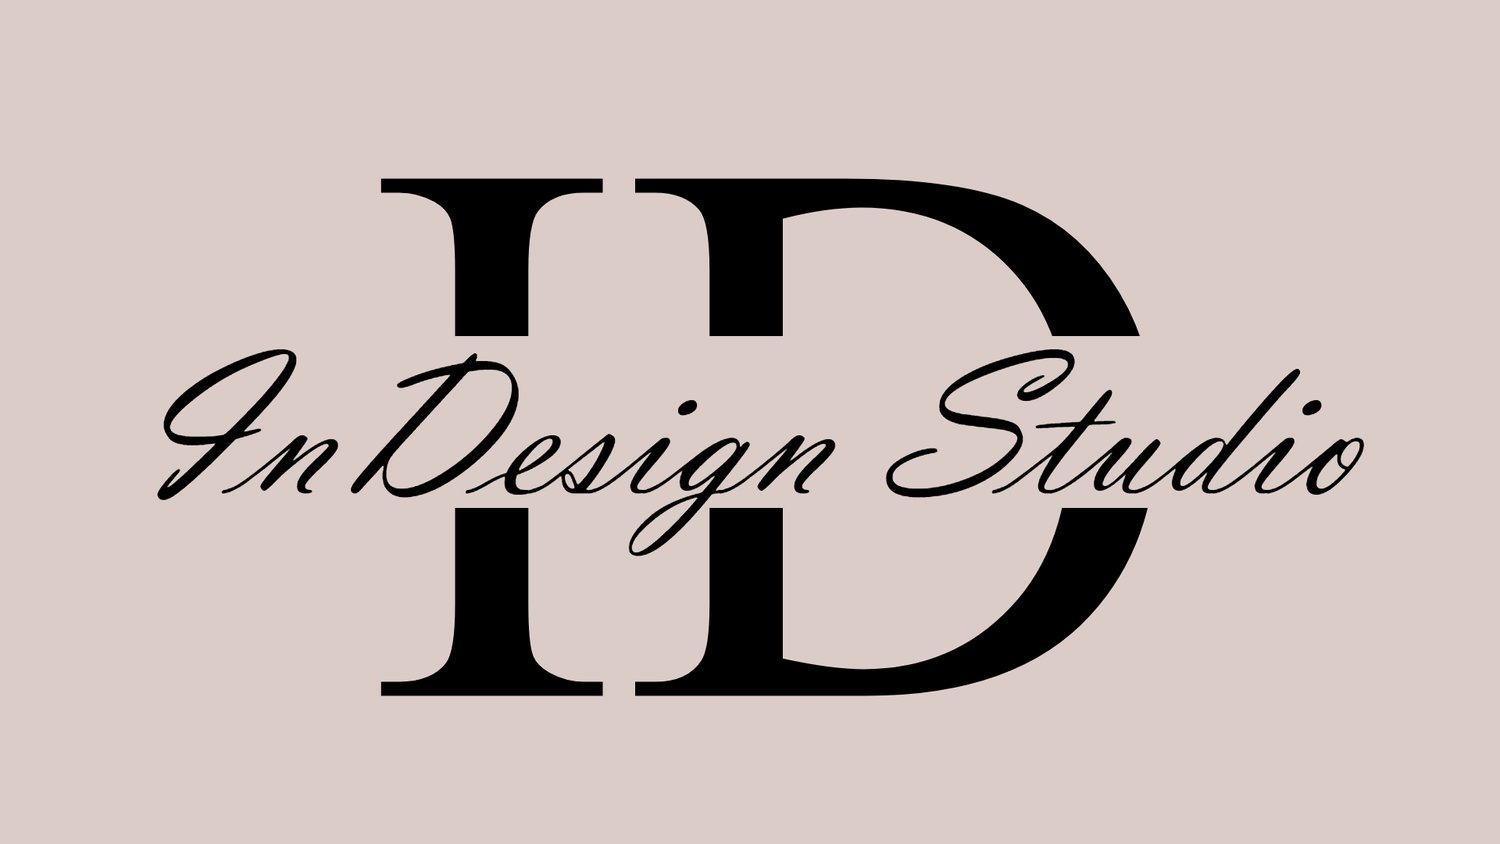 InDesign Studio